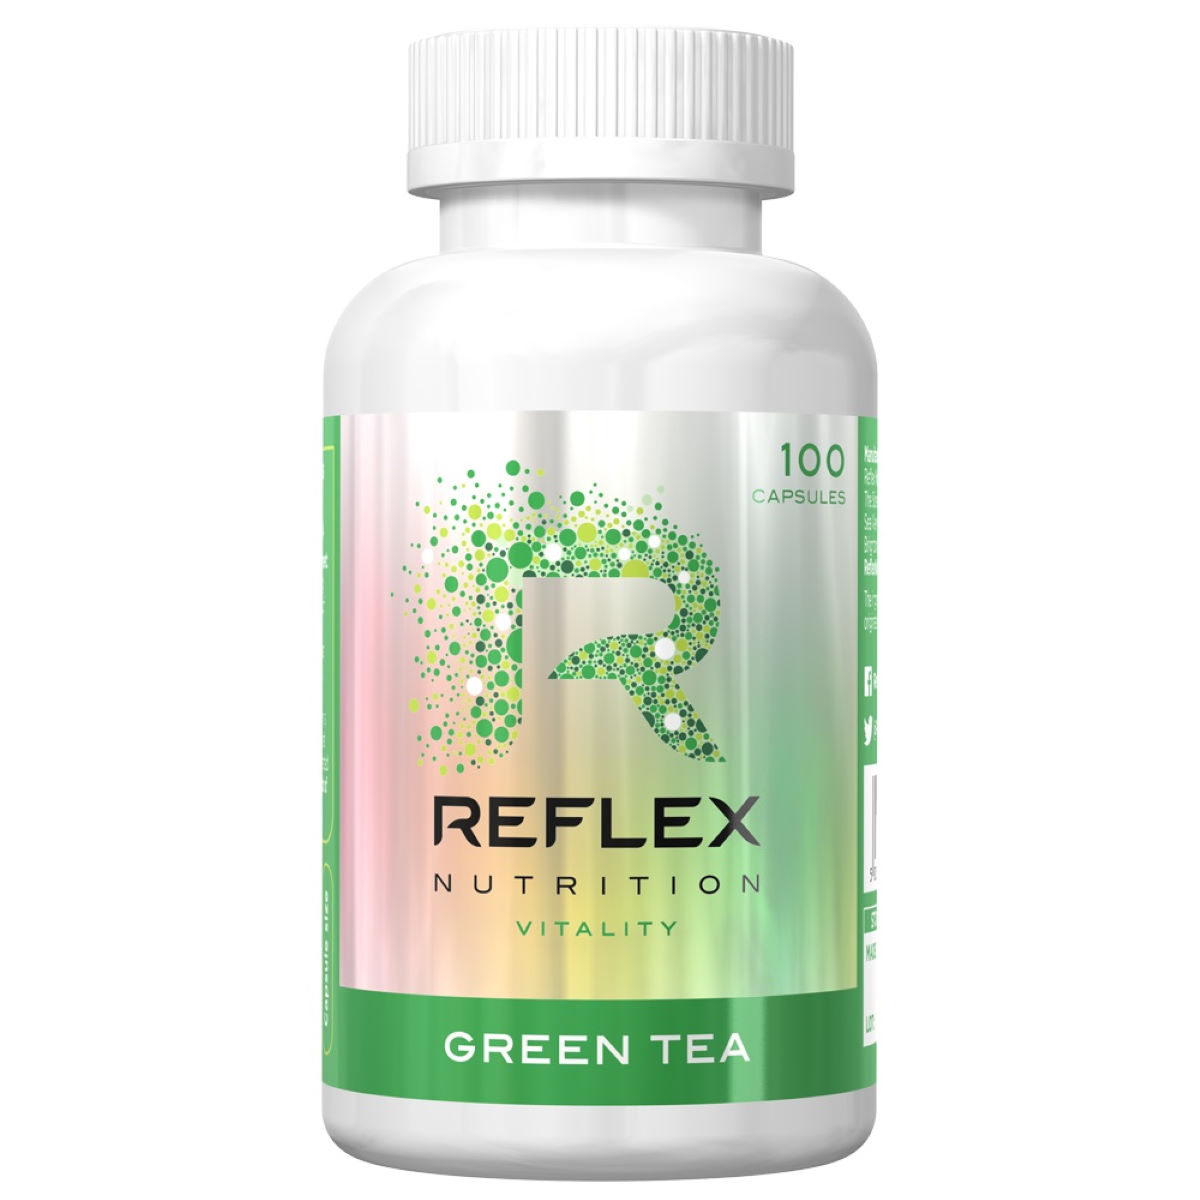 Reflex Green Tea Extract (100 Capsules) - Suplementos vegetales